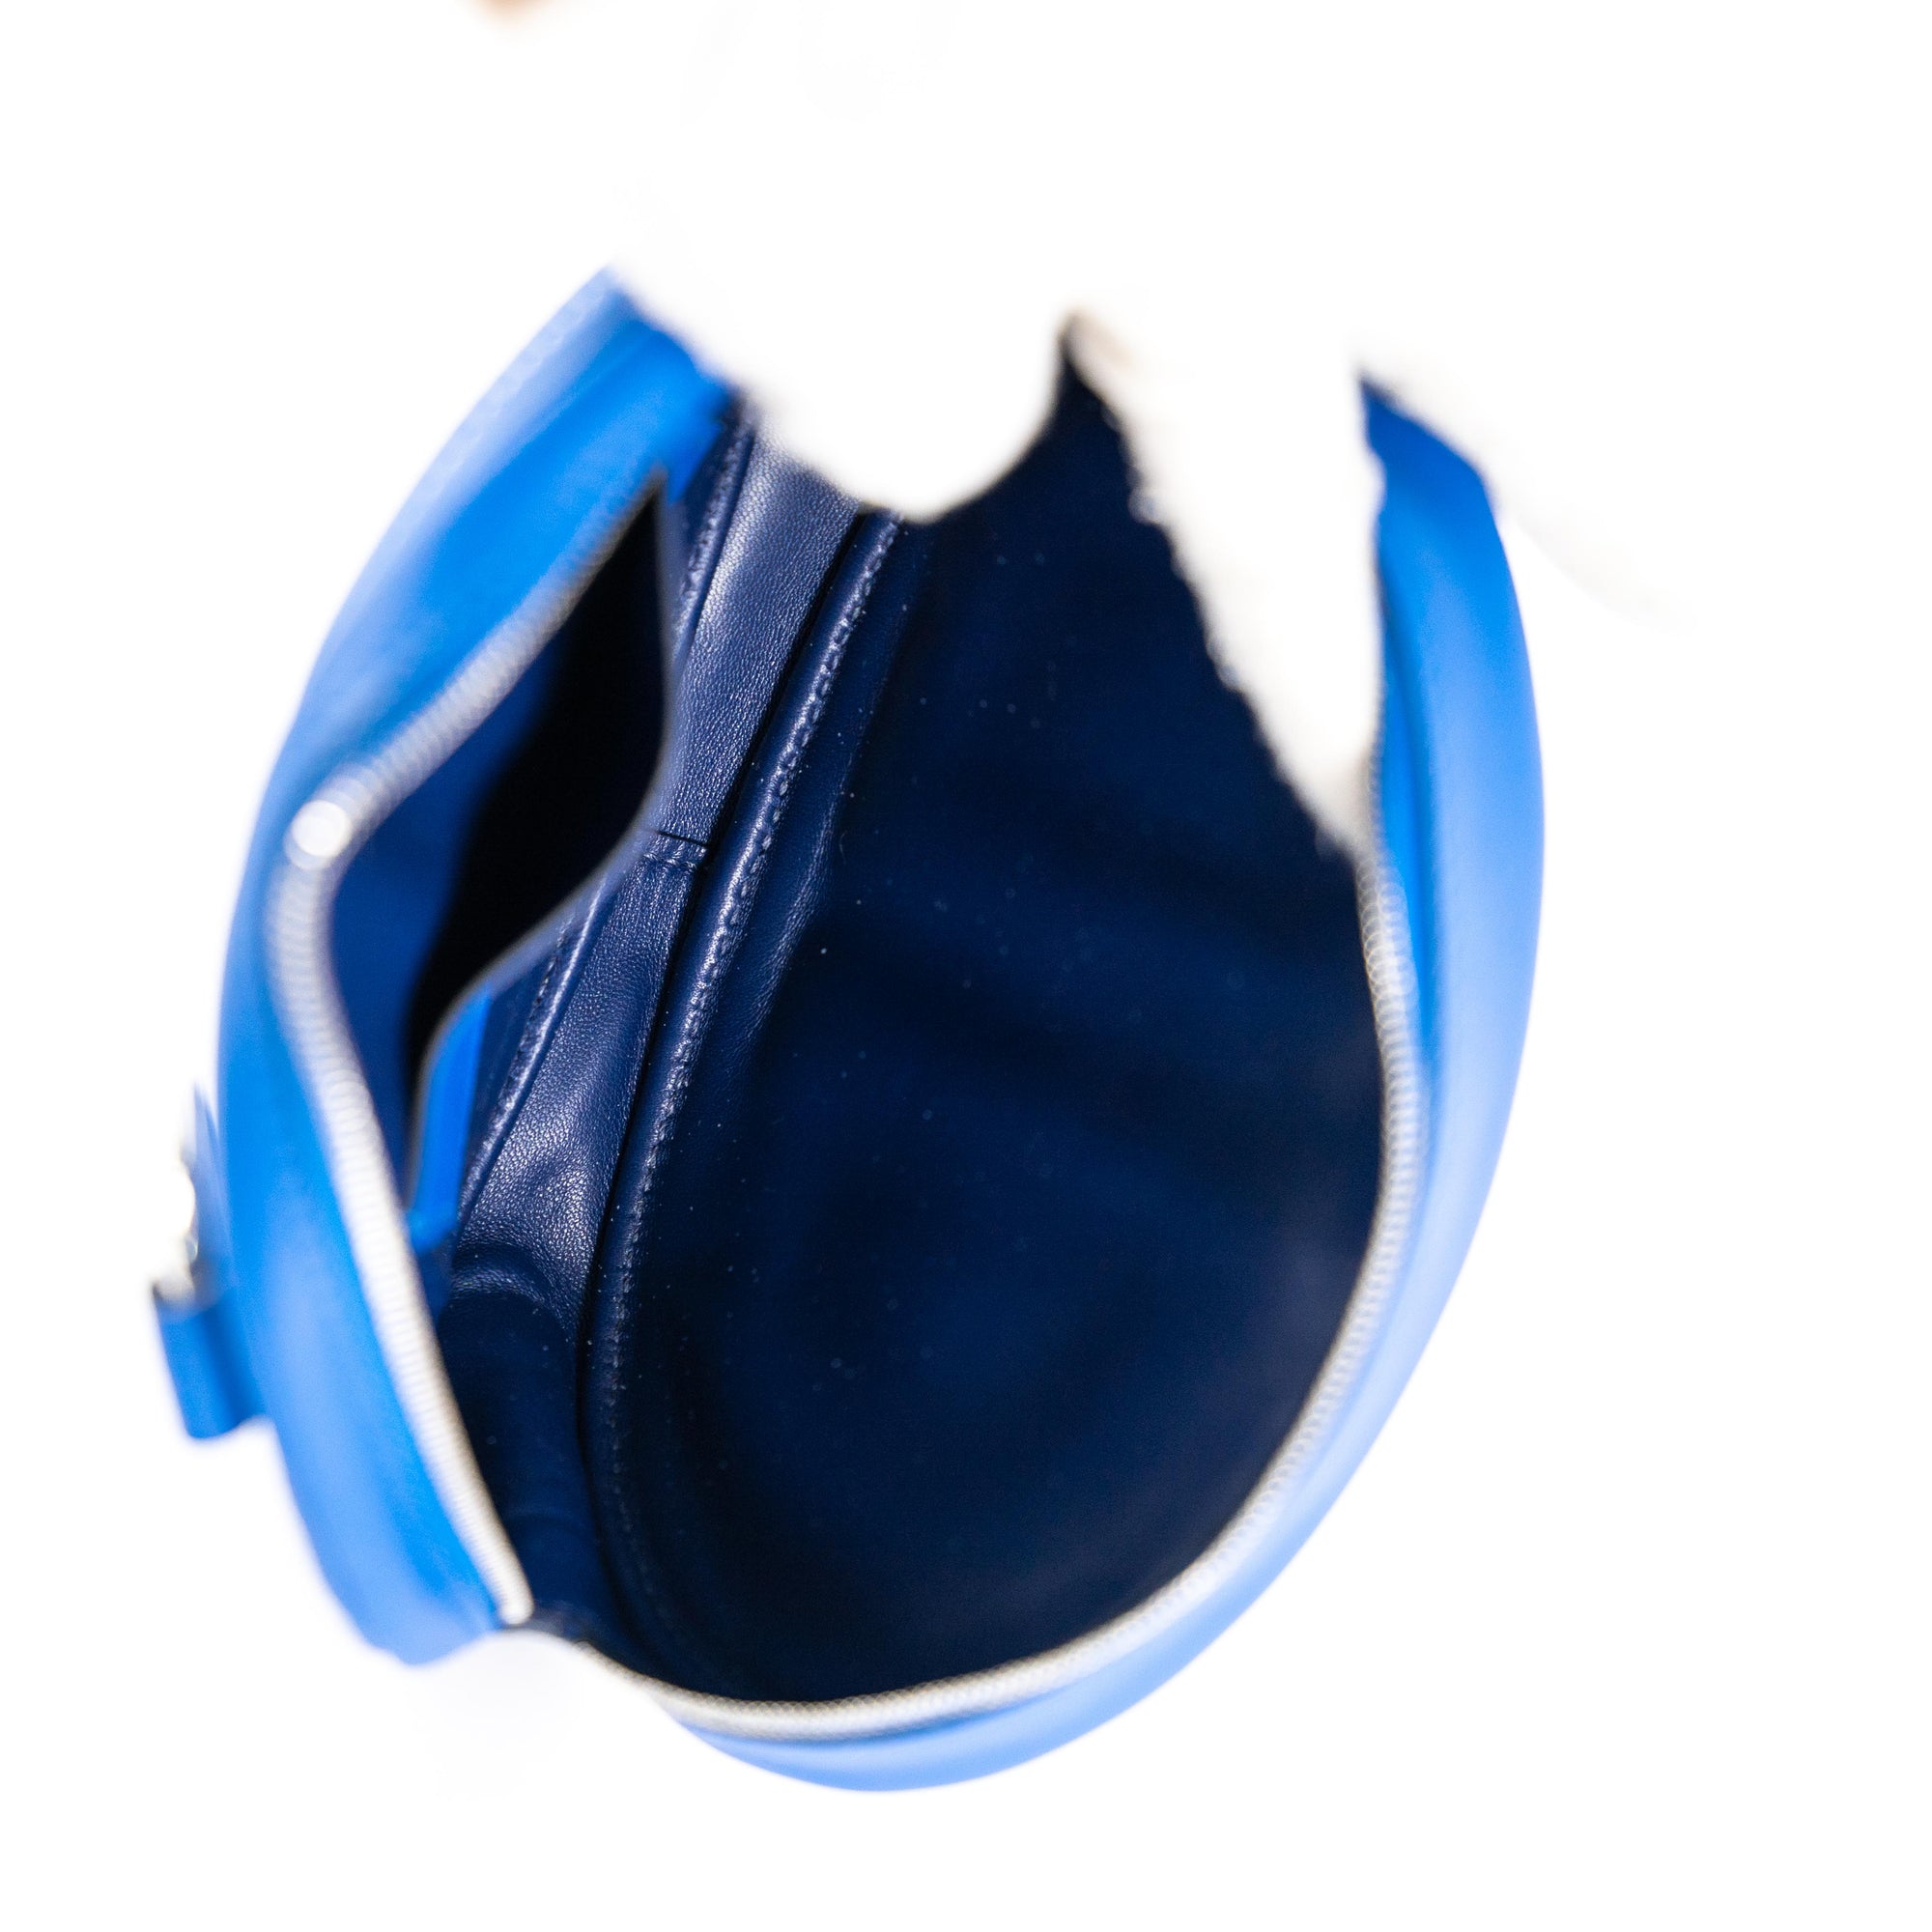 Hermès Swift In-The-Loop Belt Bag - Brown Waist Bags, Handbags - HER551135